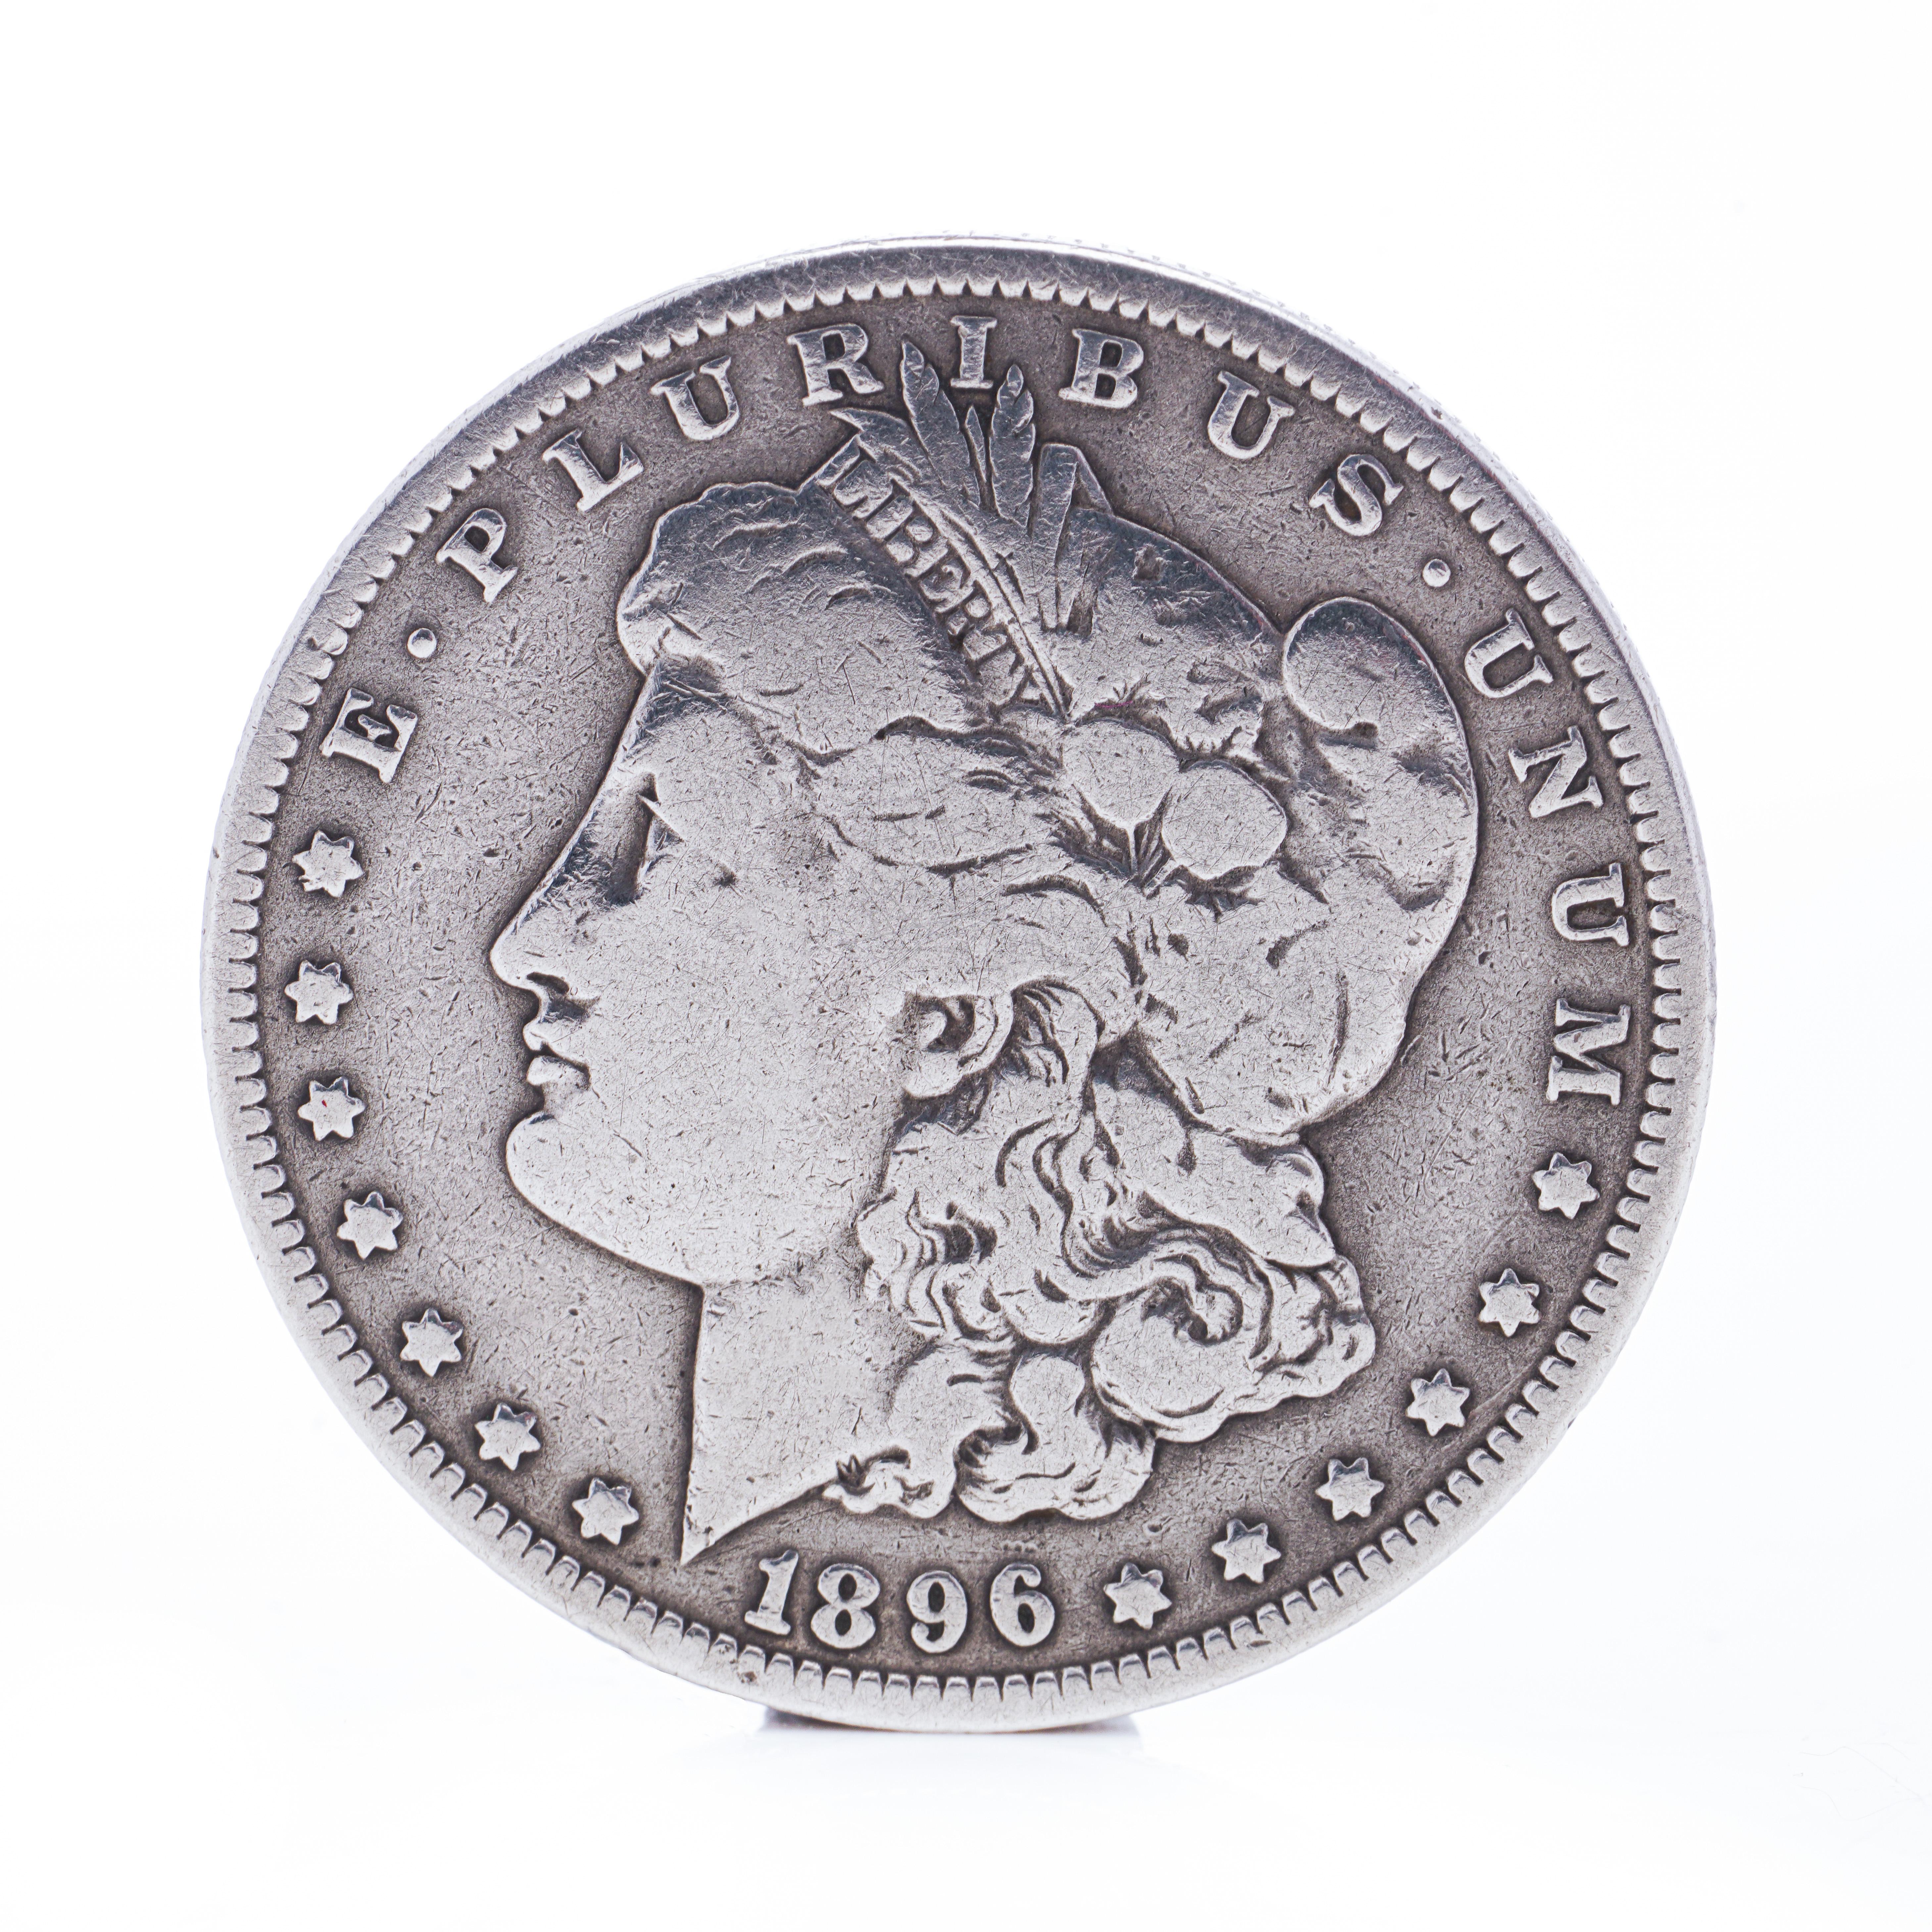 1896 dollar coin